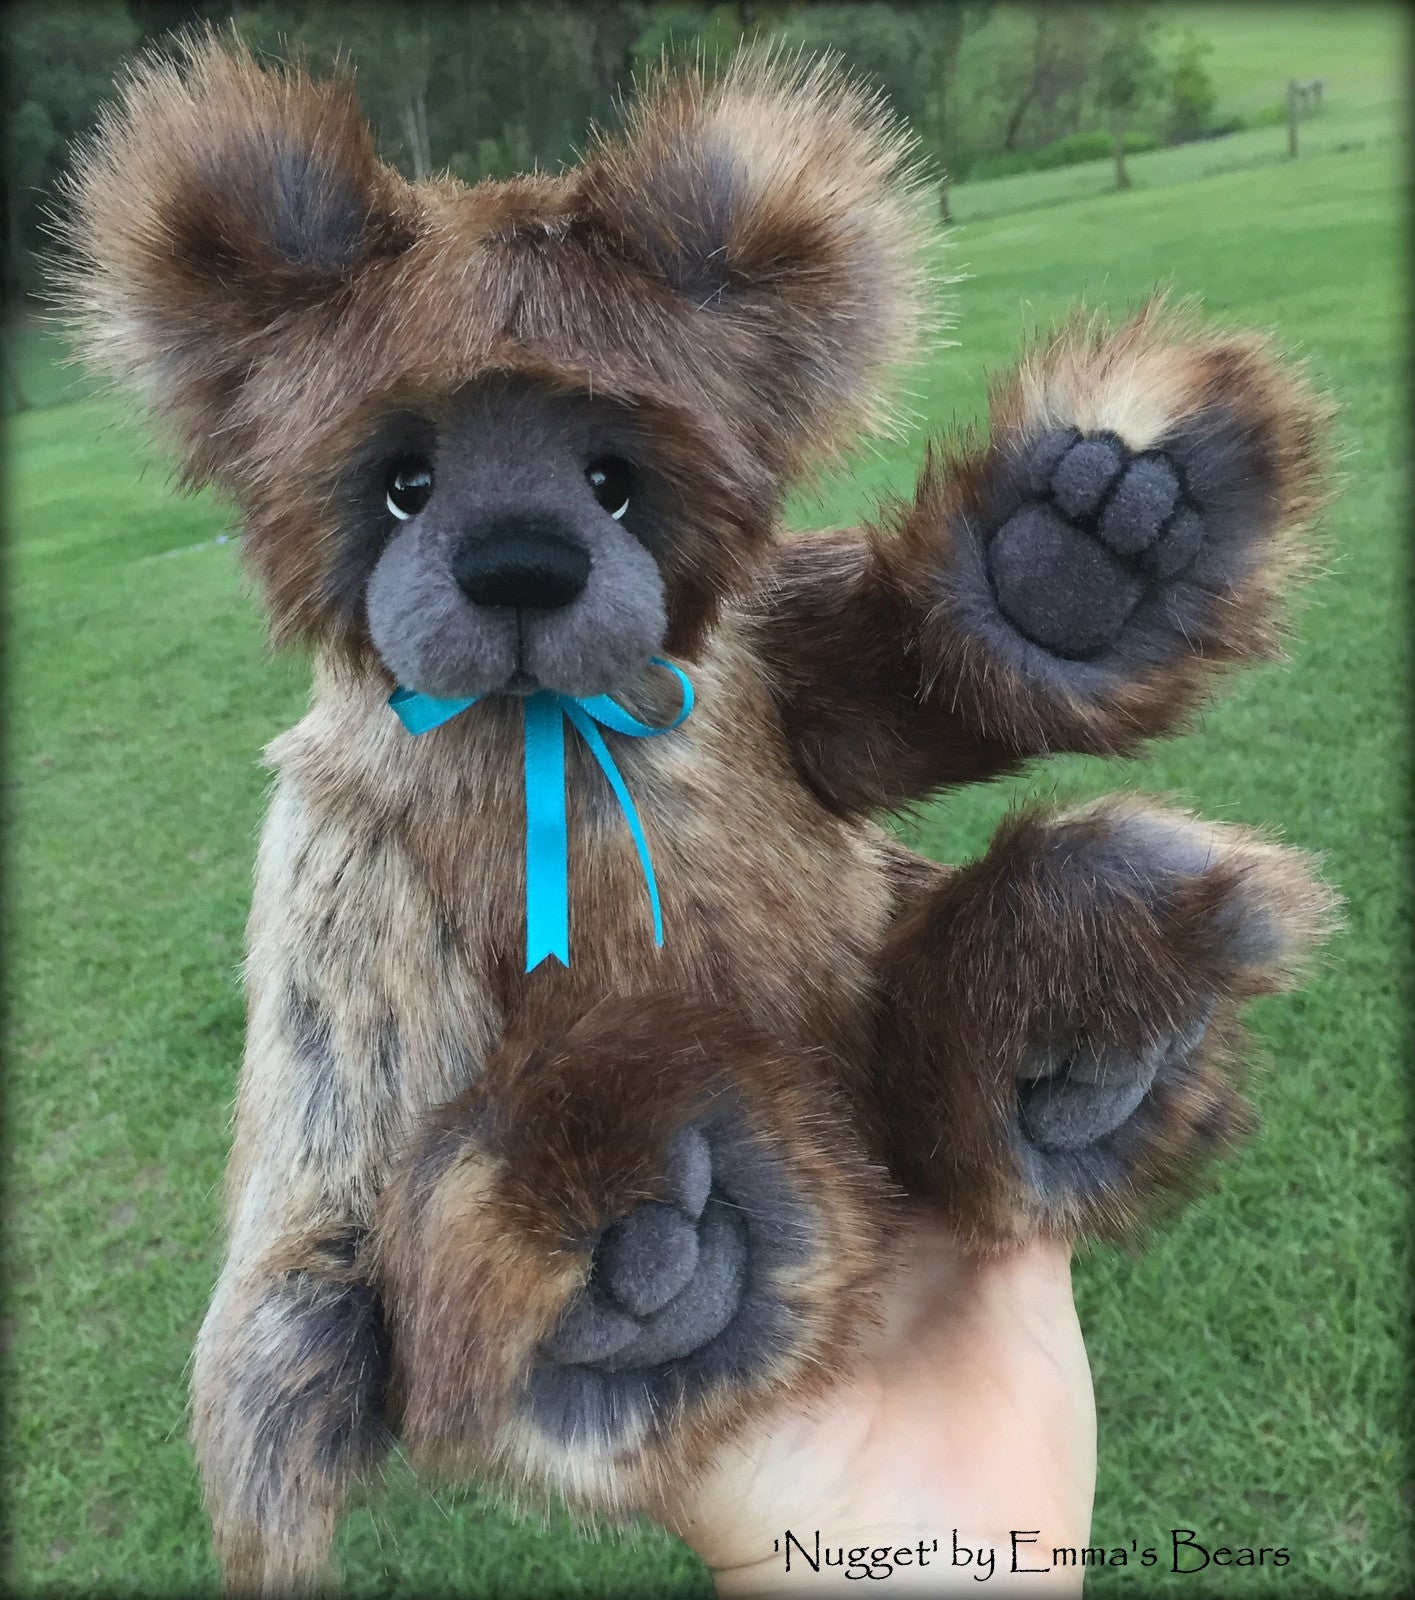 Nugget - 13" faux fur artist bear by Emma's Bears  - OOAK